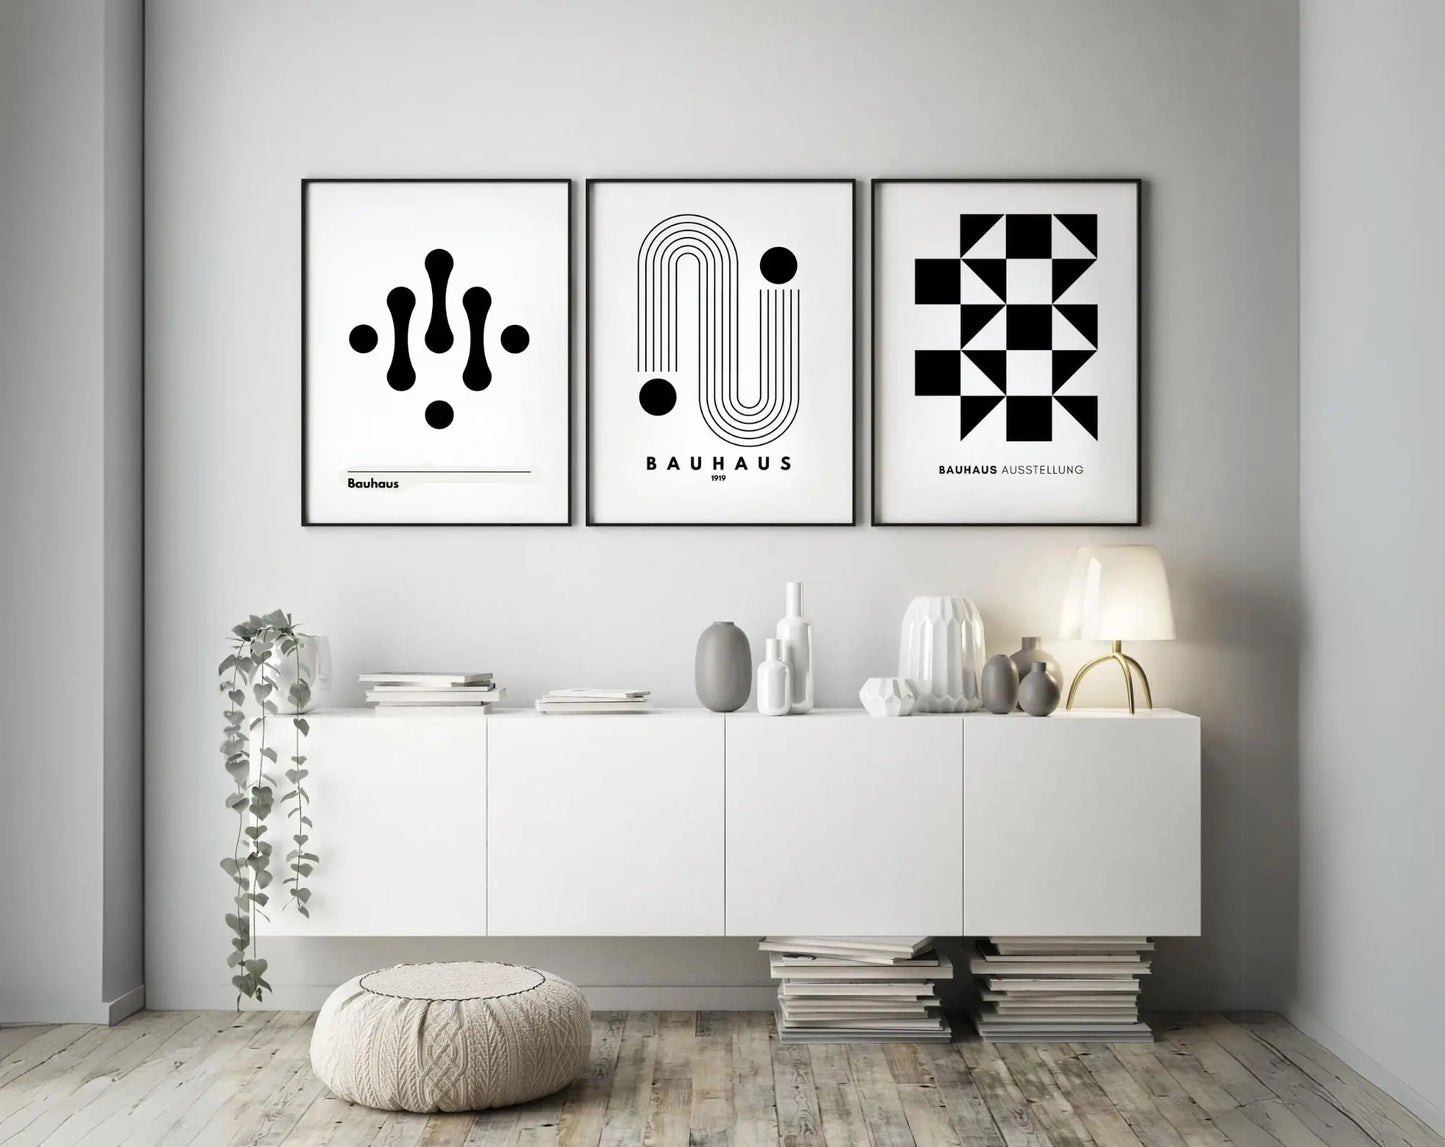 3 affiches Bauhaus Noir et blanc FLTMfrance